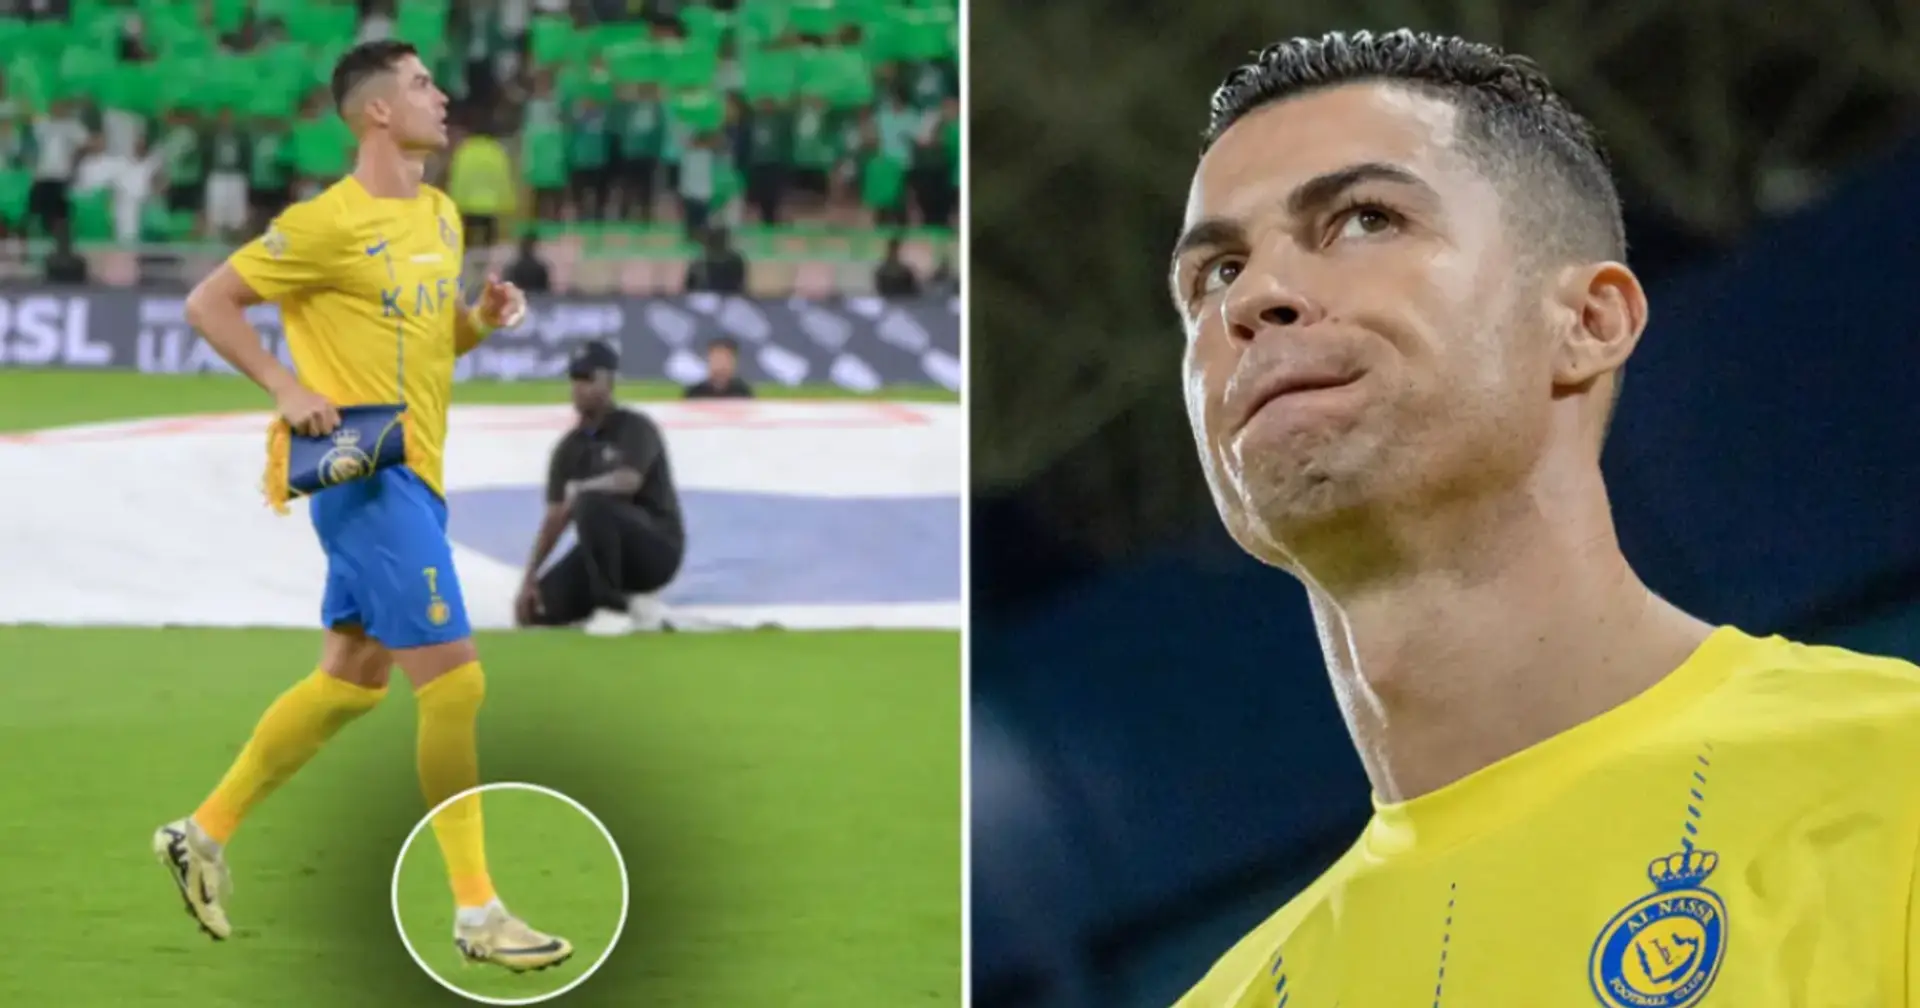 Warum betritt Cristiano Ronaldo das Fußballfeld immer mit dem rechten Fuß?